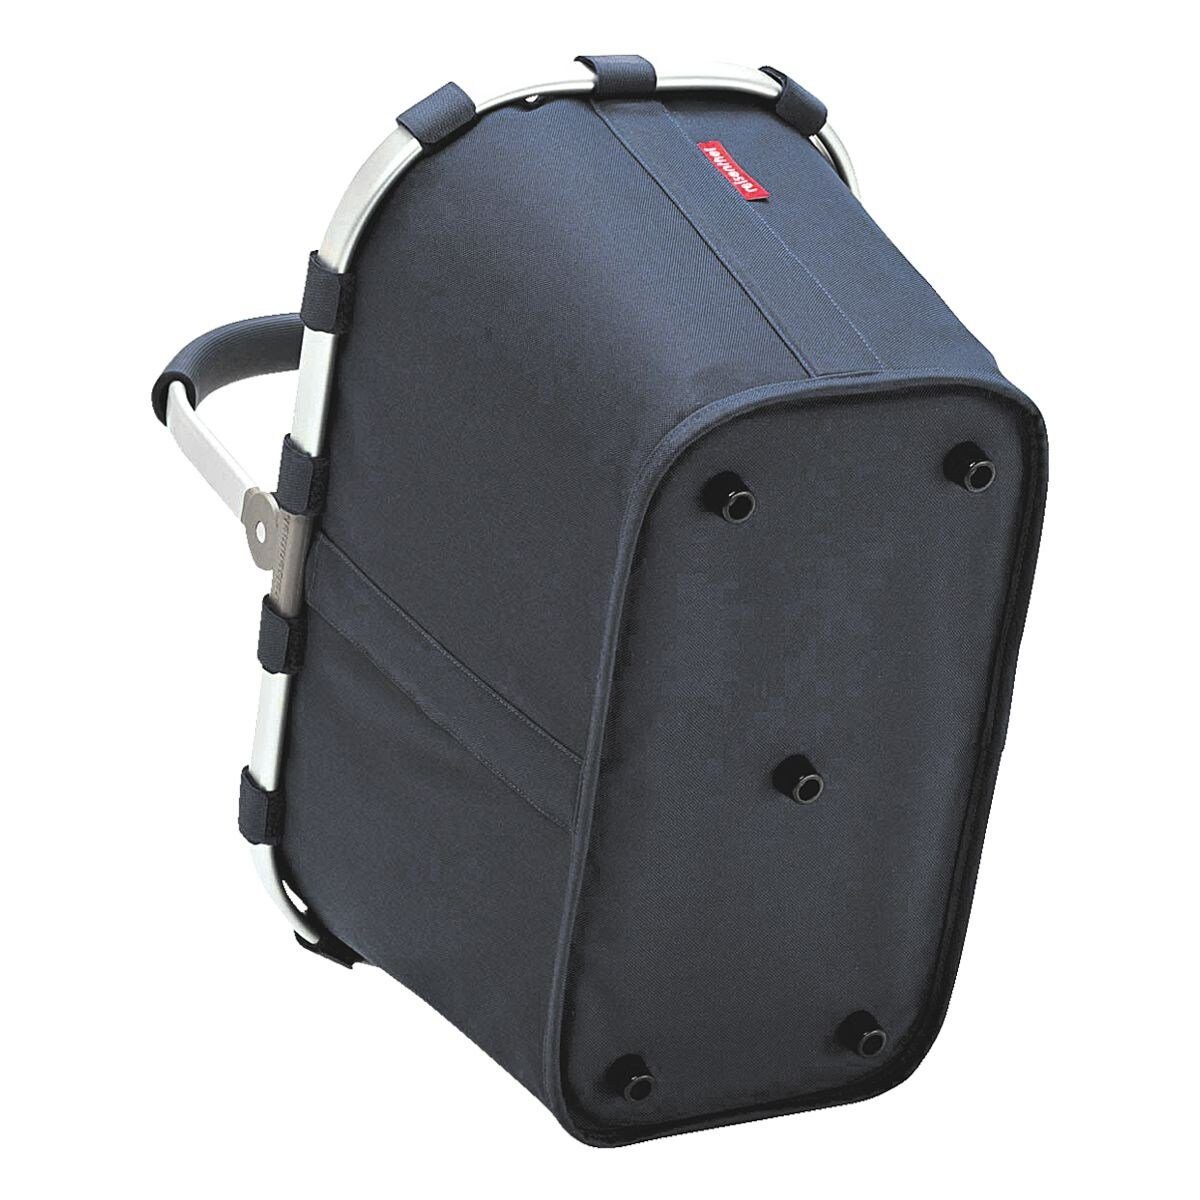 Reißverschluss carrybag Innentasche navy, zusammenklappbar, dunkelblau REISENTHEL® Einkaufskorb mit